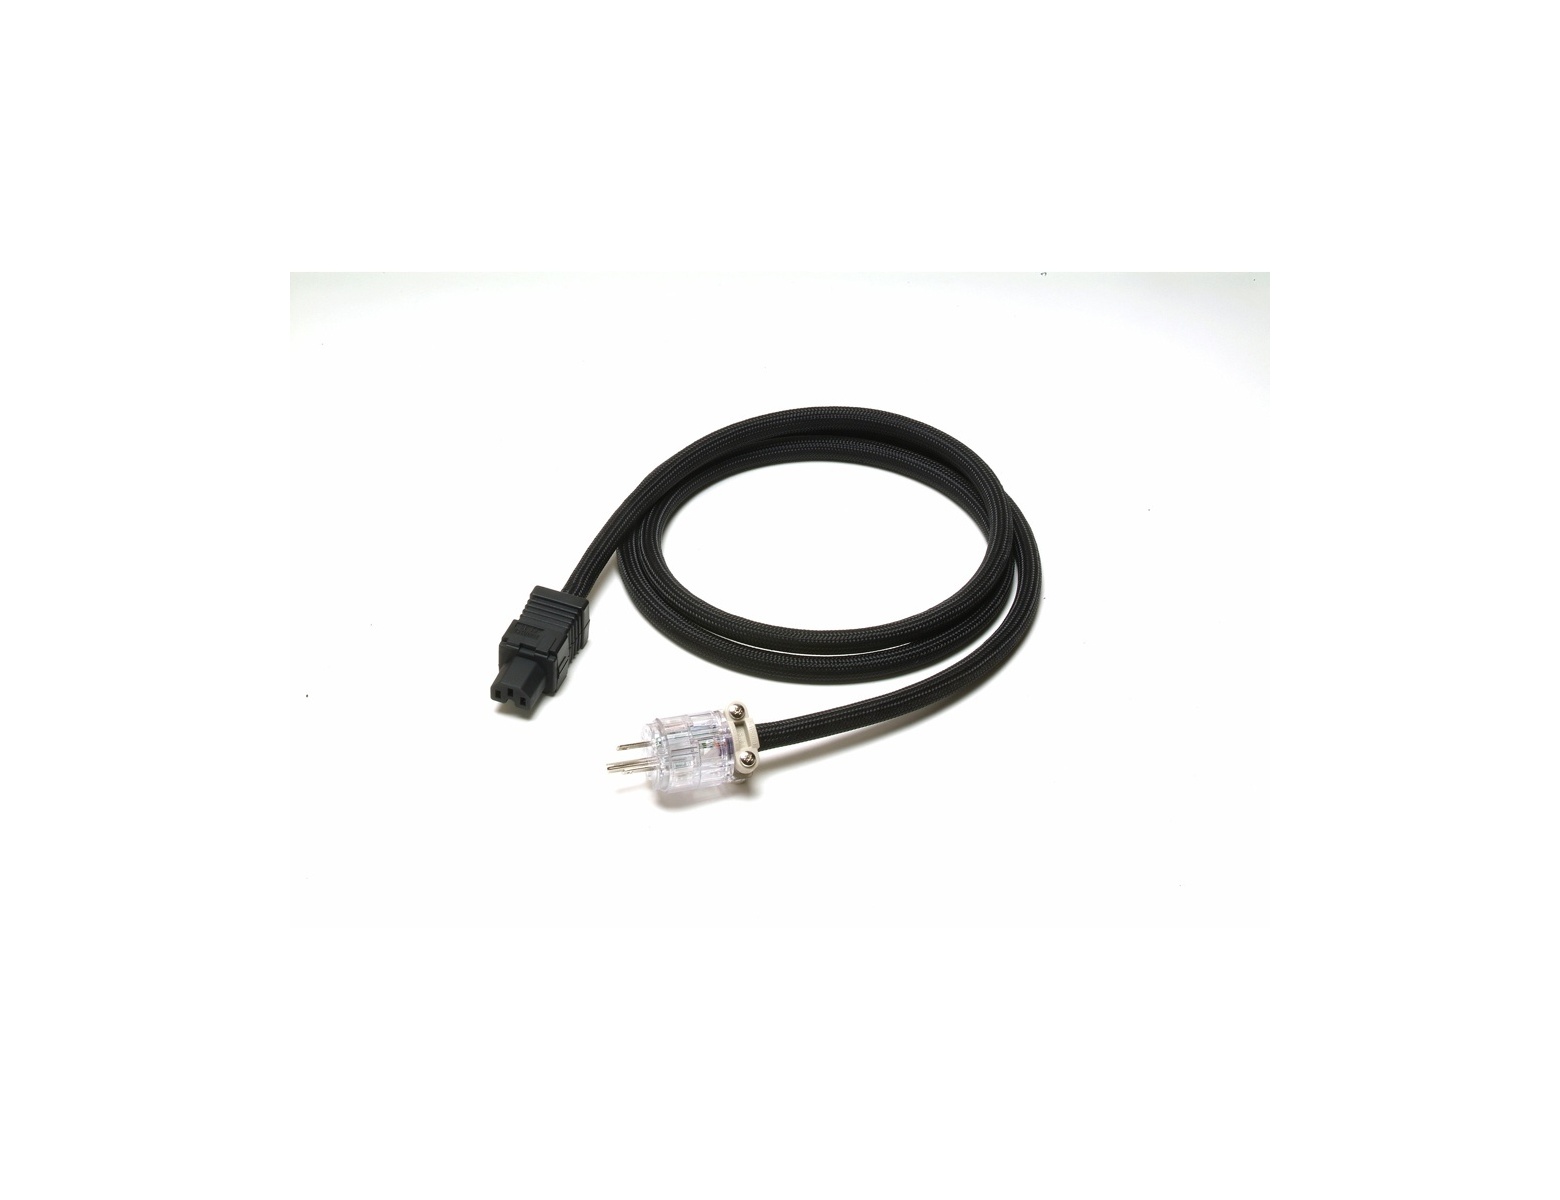 Acoustic Revive POWER Standard-tripleC-FM Power Cable